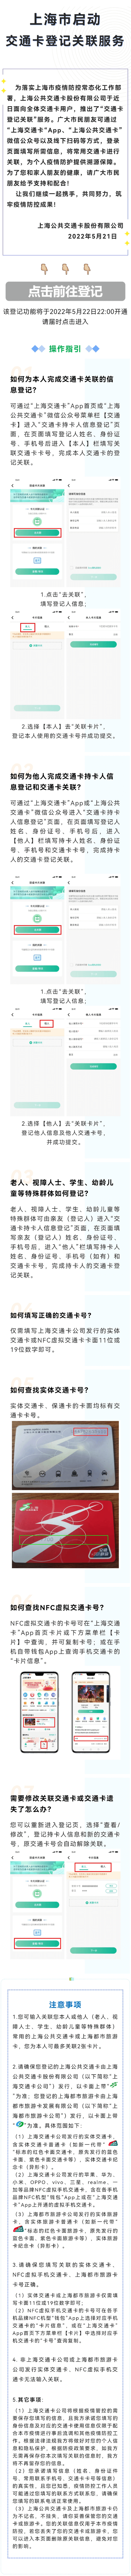 乘坐上海公共交通等交通工具须知，自2022年5月22日零时起施行